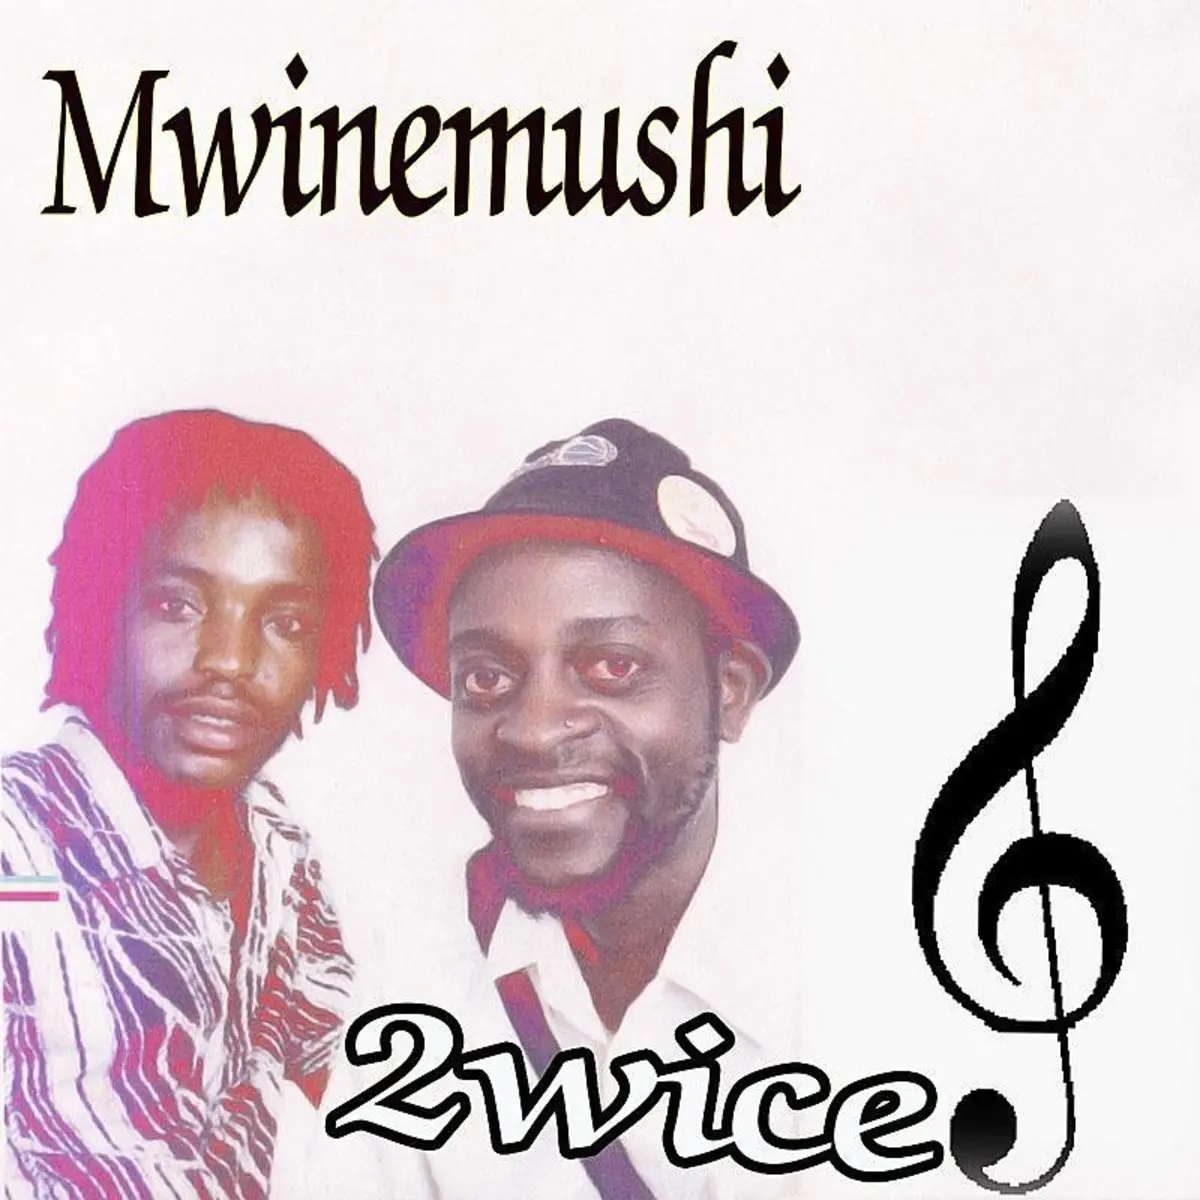 Mwinemushi by 2wice | Album